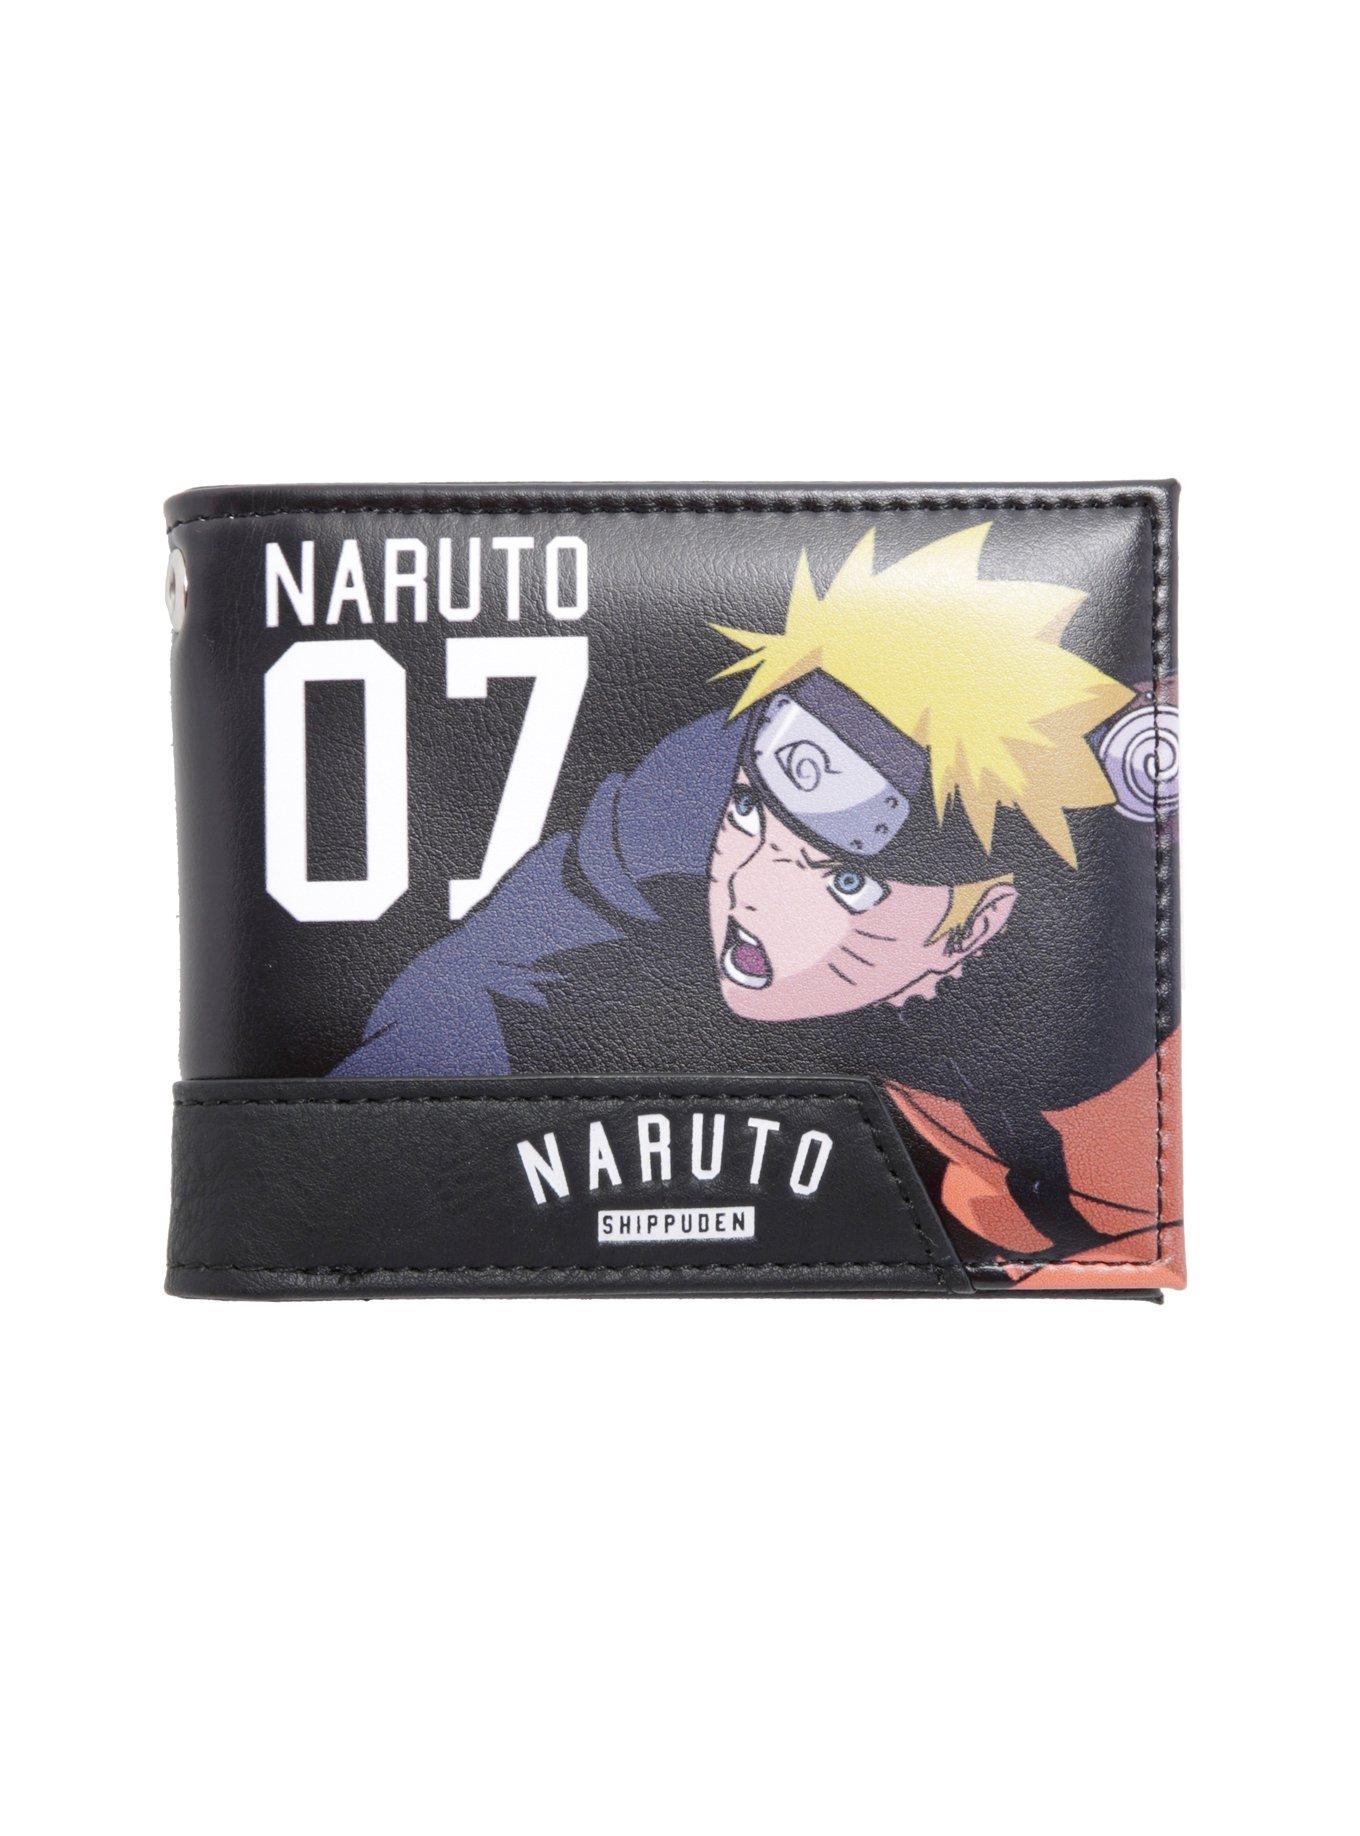 Naruto Shippuden Naruto 07 Bi-Fold Wallet, , hi-res